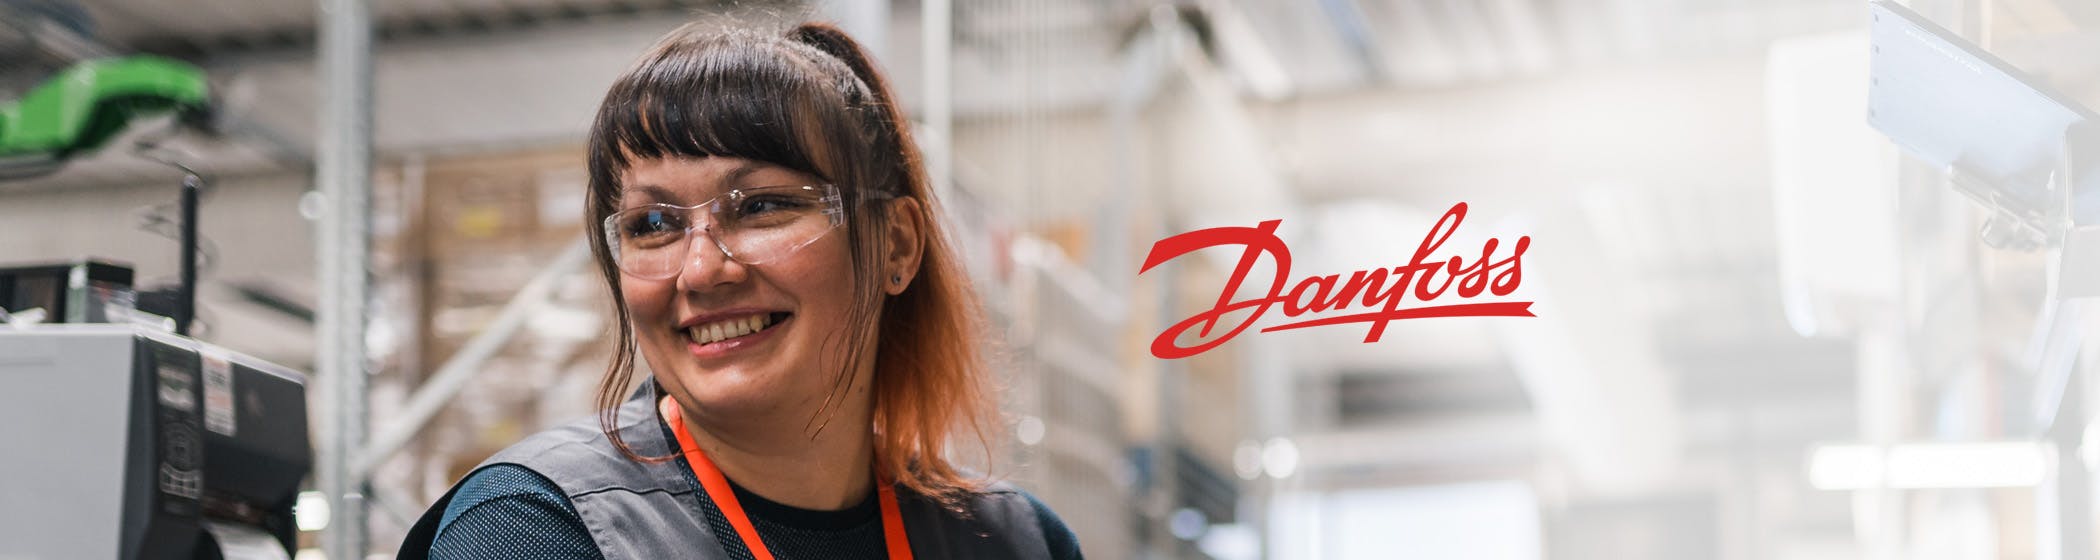 Danfoss – Avoimet työpaikat